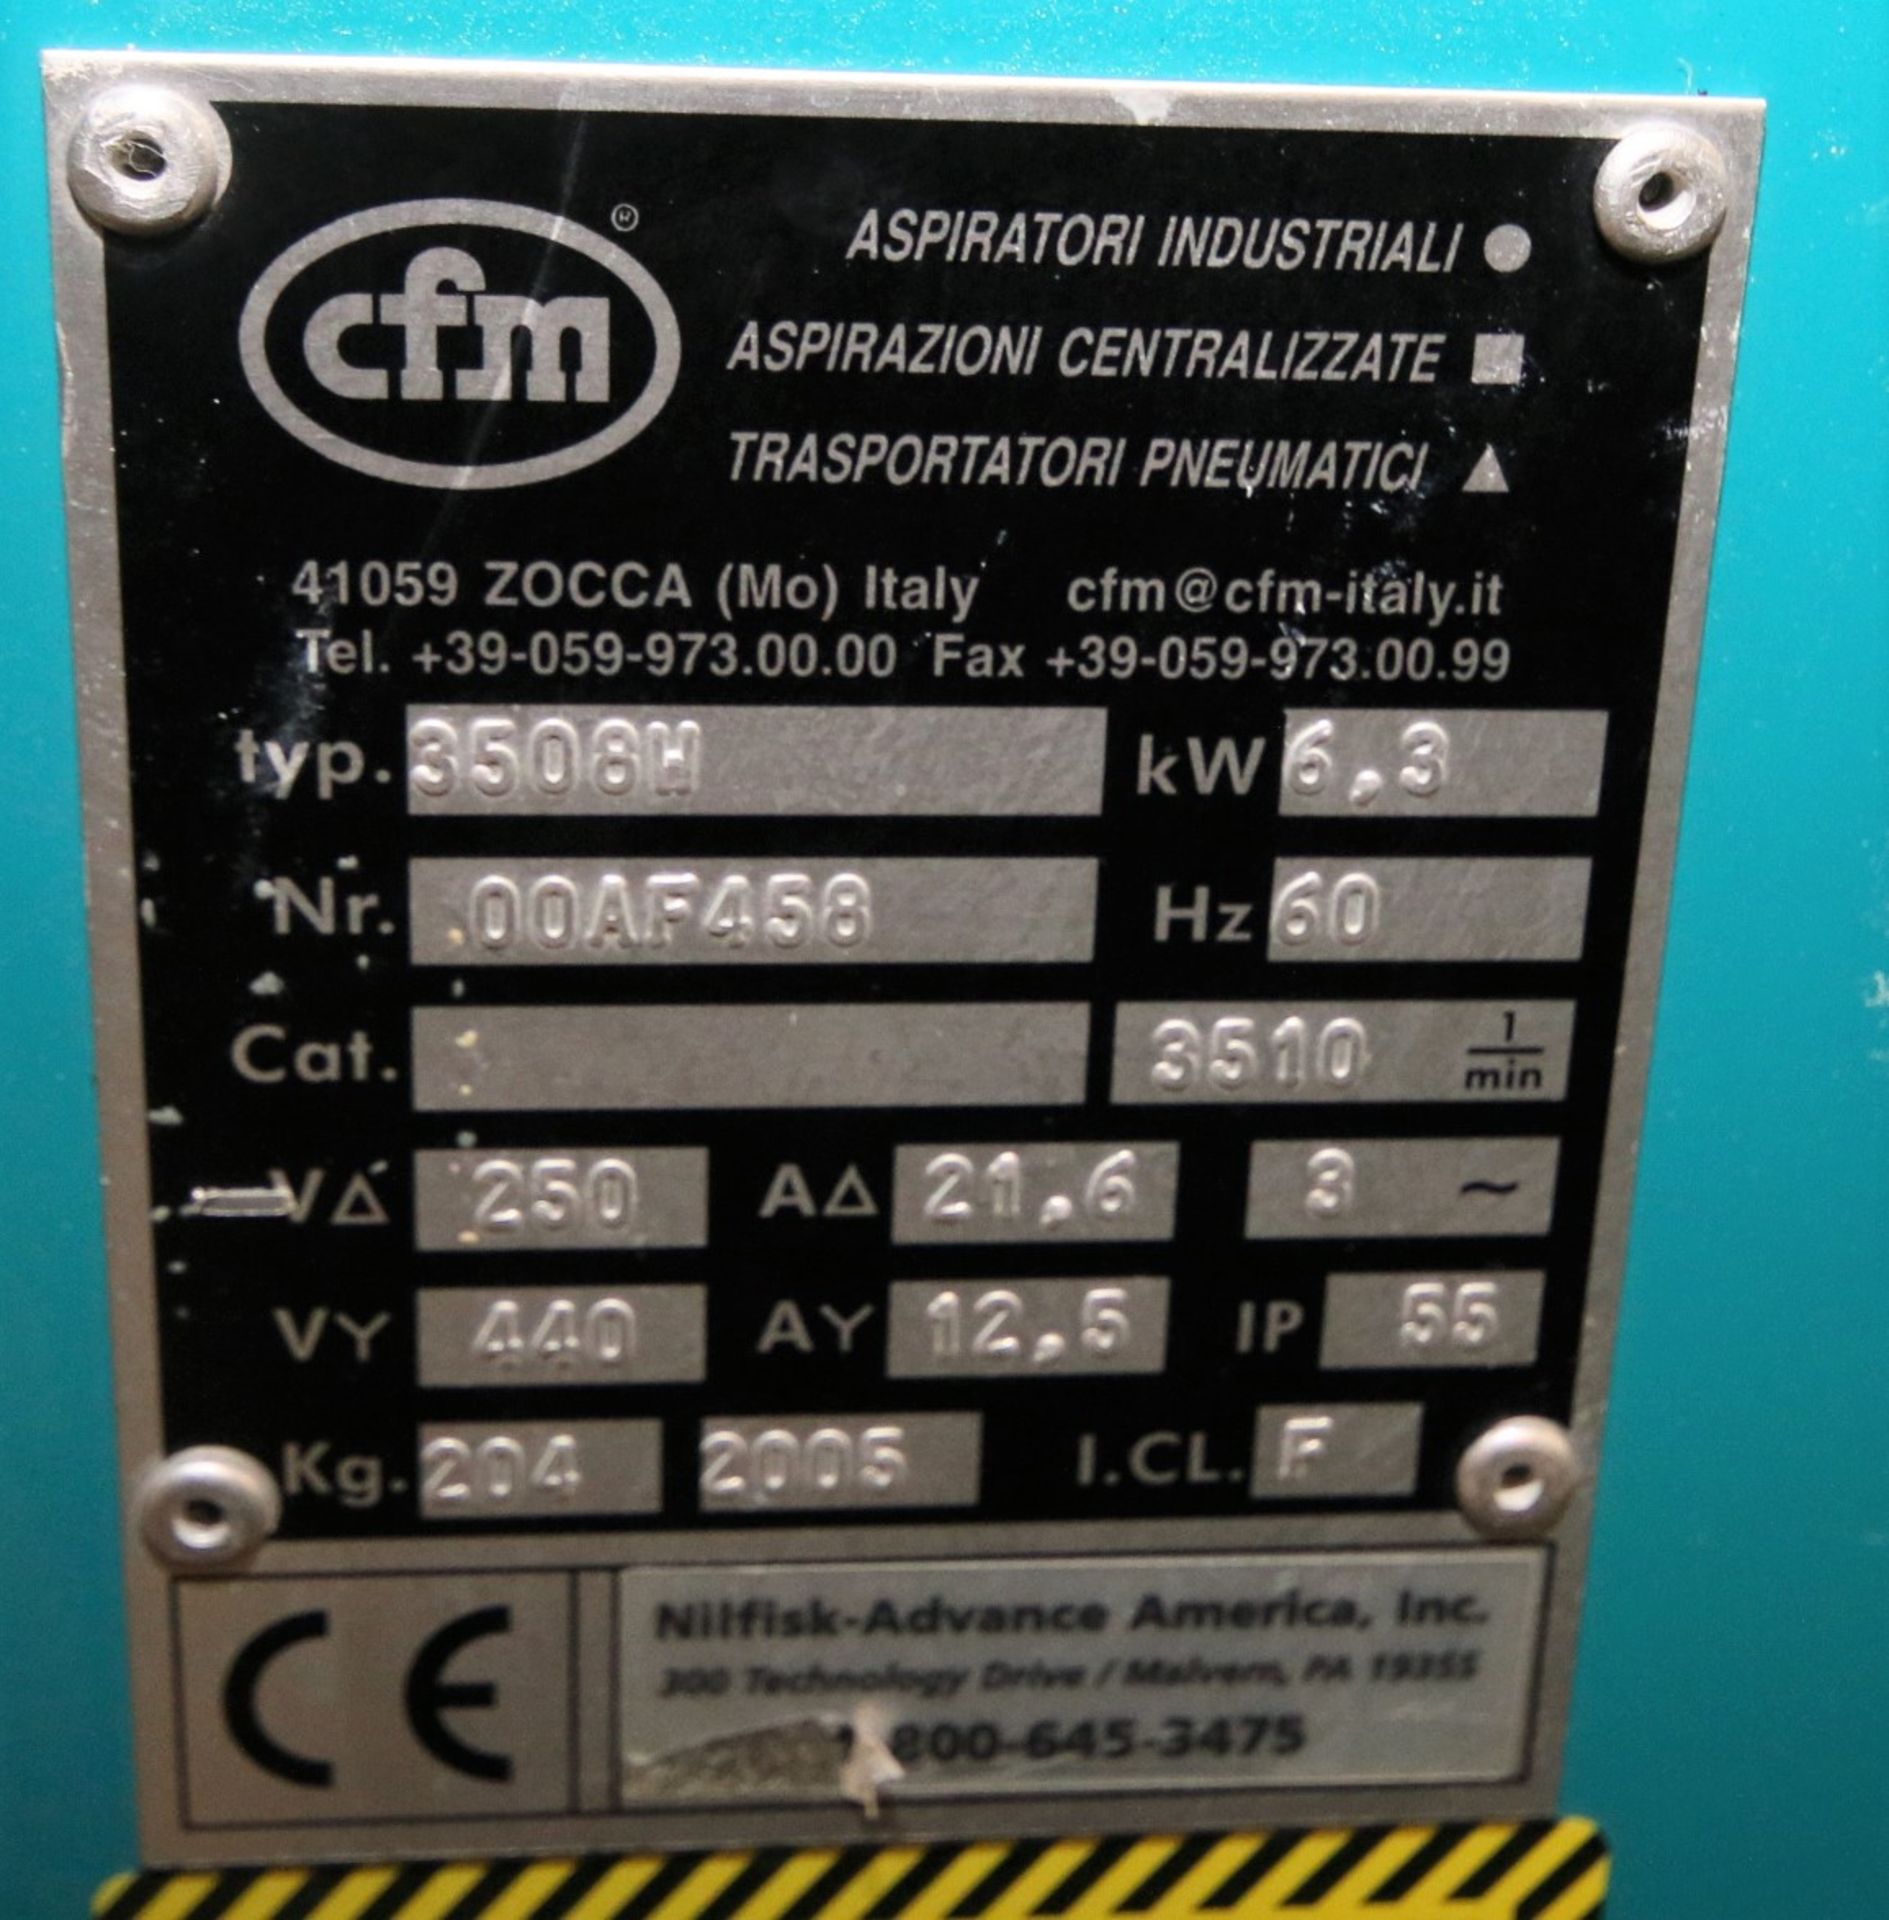 CFM Industrial Vacuum System, Model 3508W, S/N 00AF458, 440V 3 Phase (W798) Rigging/Handling - Image 2 of 2